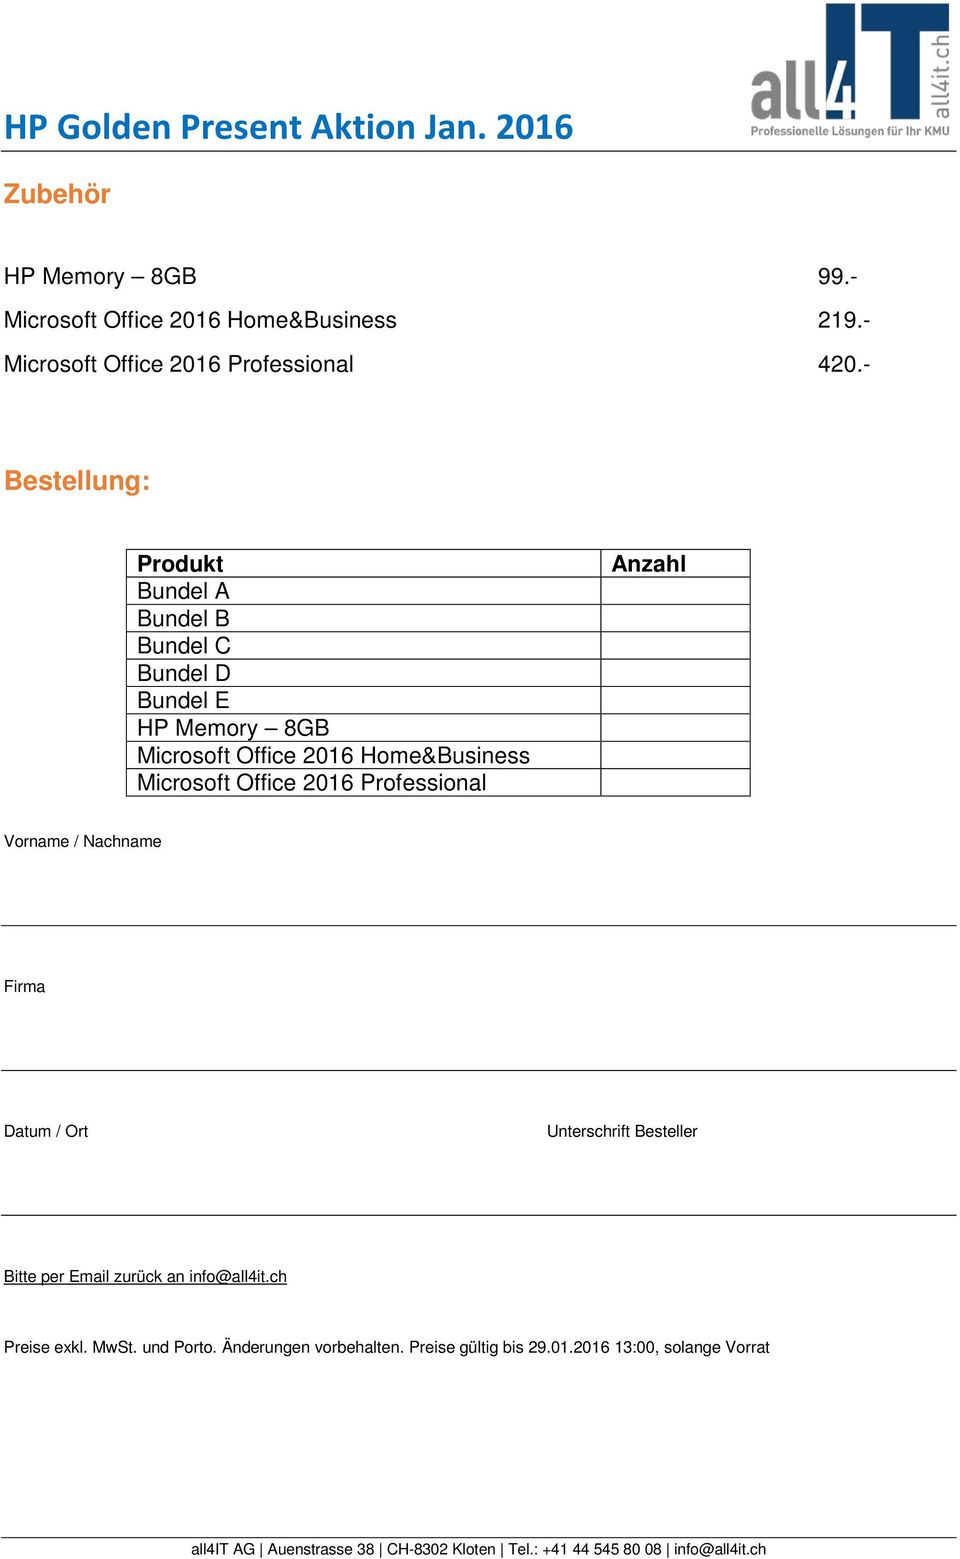 Microsoft Office 2016 Professional Anzahl Vorname / Nachname Firma Datum / Ort Unterschrift Besteller Bitte per Email